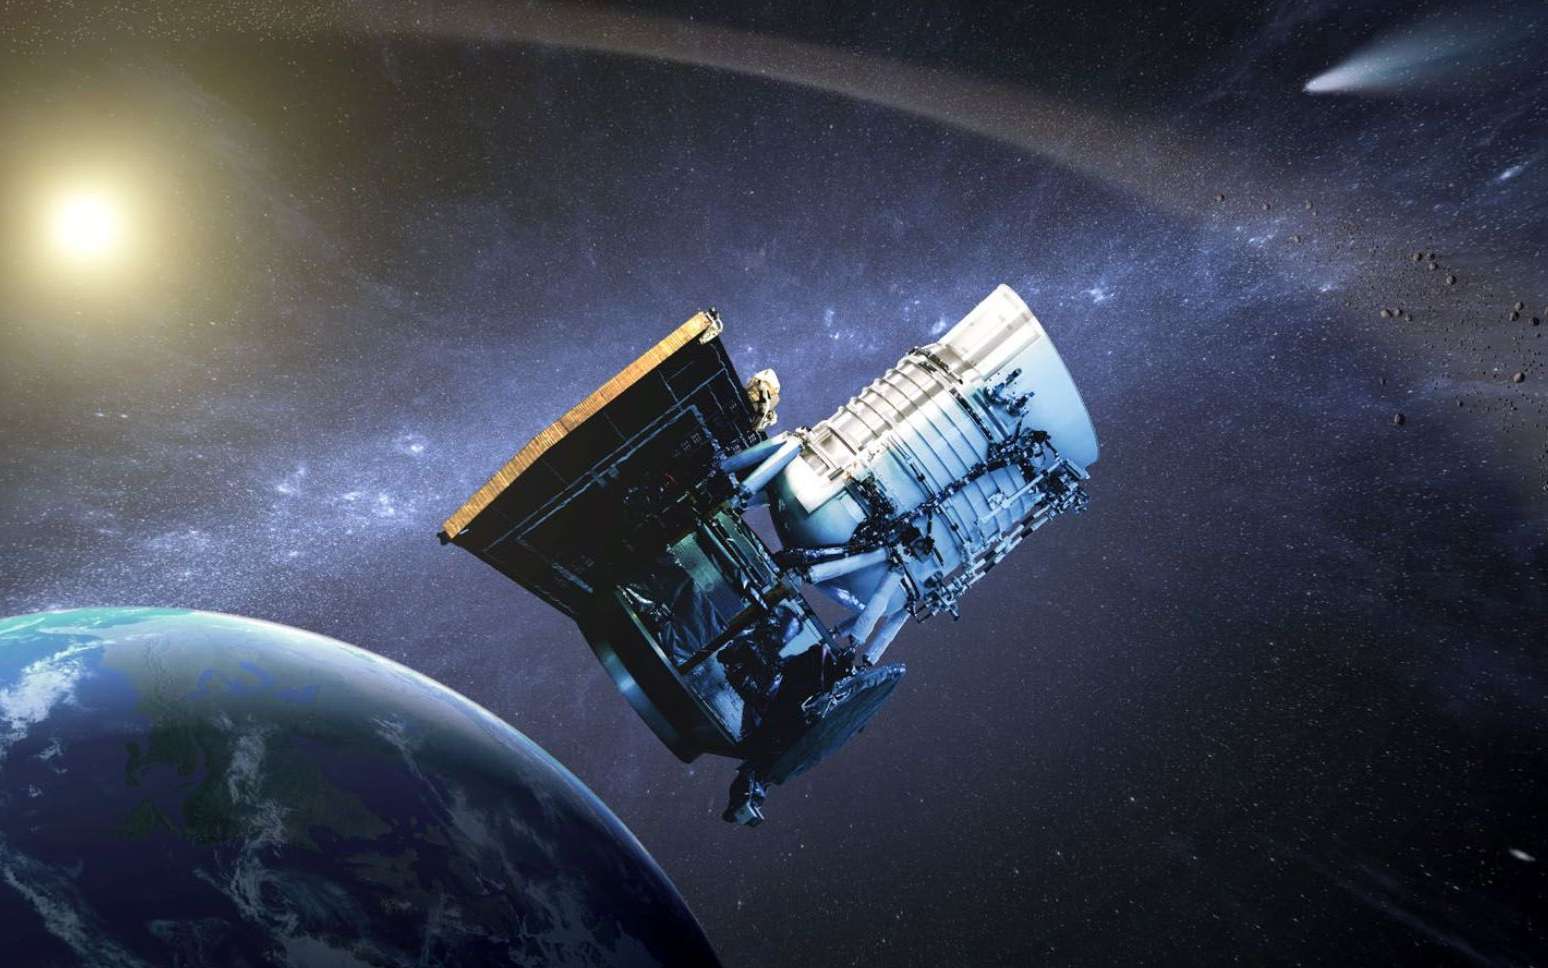 Wise (Wide-field infrared survey explorer, en français « Explorateur à grand champ pour l'étude dans l'infrarouge ») est un télescope spatial américain dont la mission consiste à réaliser une cartographie complète des sources infrarouges afin de repérer en particulier les astéroïdes comme les géocroiseurs, les étoiles peu visibles proches du Soleil et les étoiles de notre Galaxie masquées en lumière visible derrière des nuages interstellaires comme c'est le cas avec certains amas ouverts d'étoiles. © Nasa, JPL-Caltech